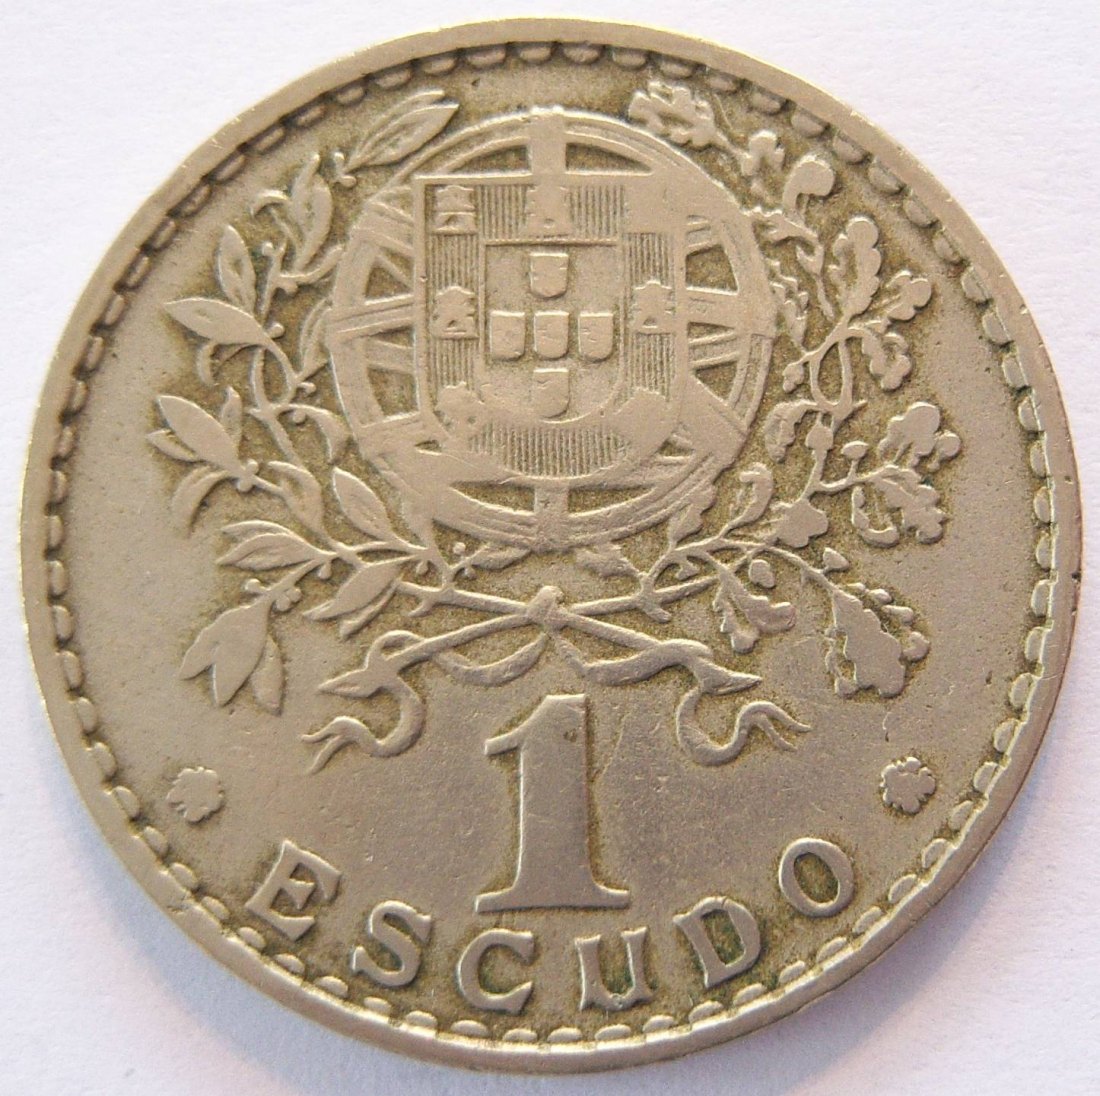  Portugal 1 Escudo 1951   